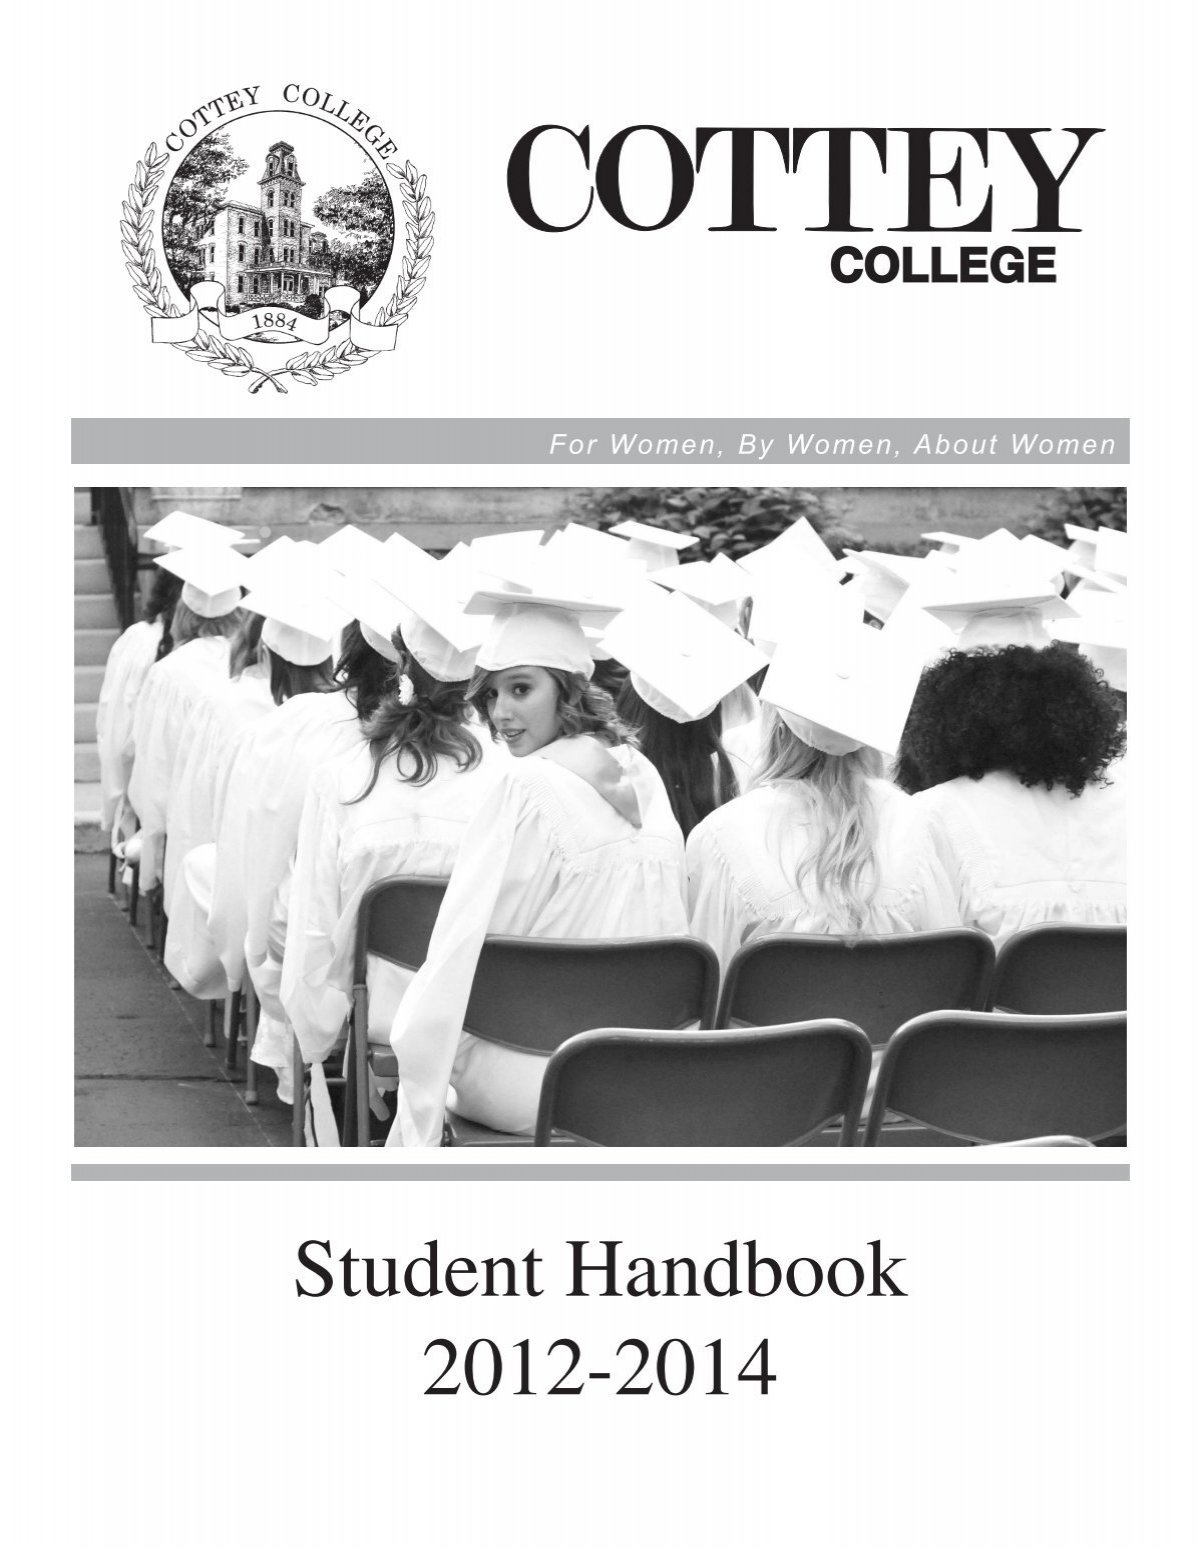 Student Handbook 2012-2014 - Cottey College